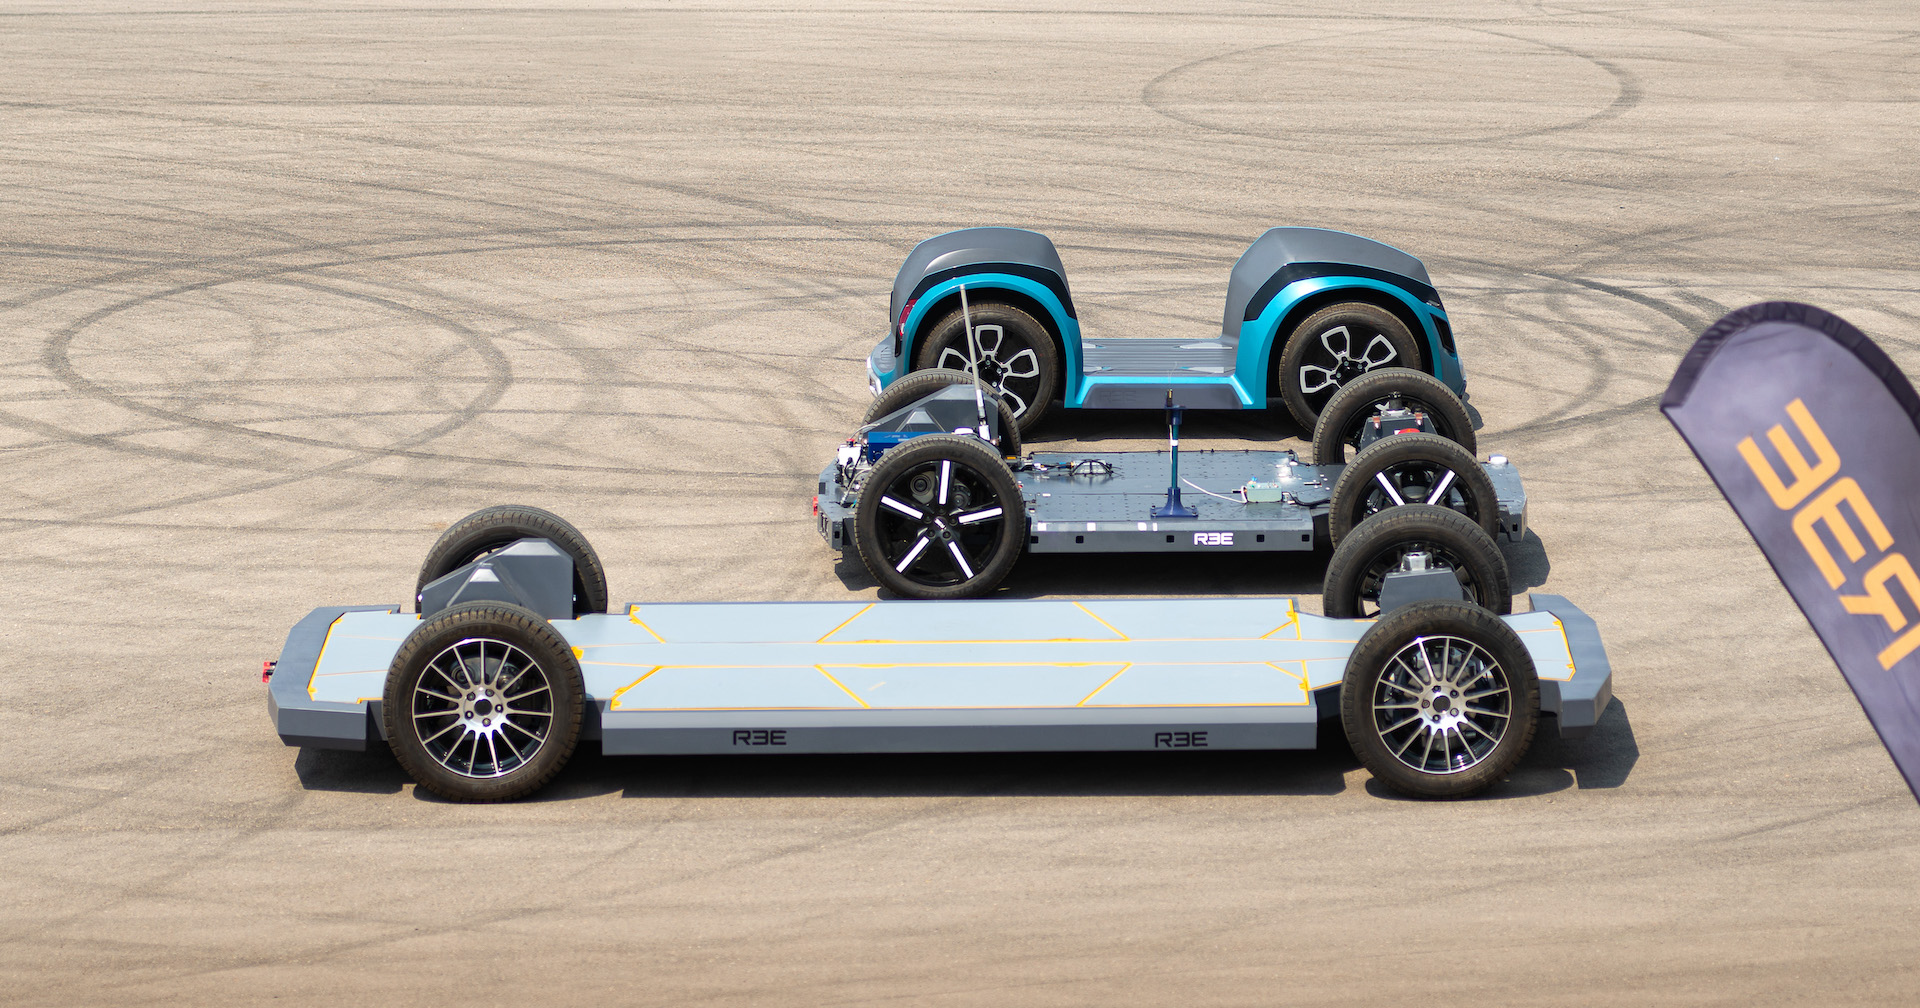 MUSE Design Winners - REE Automotive's Next-Gen EV Platform